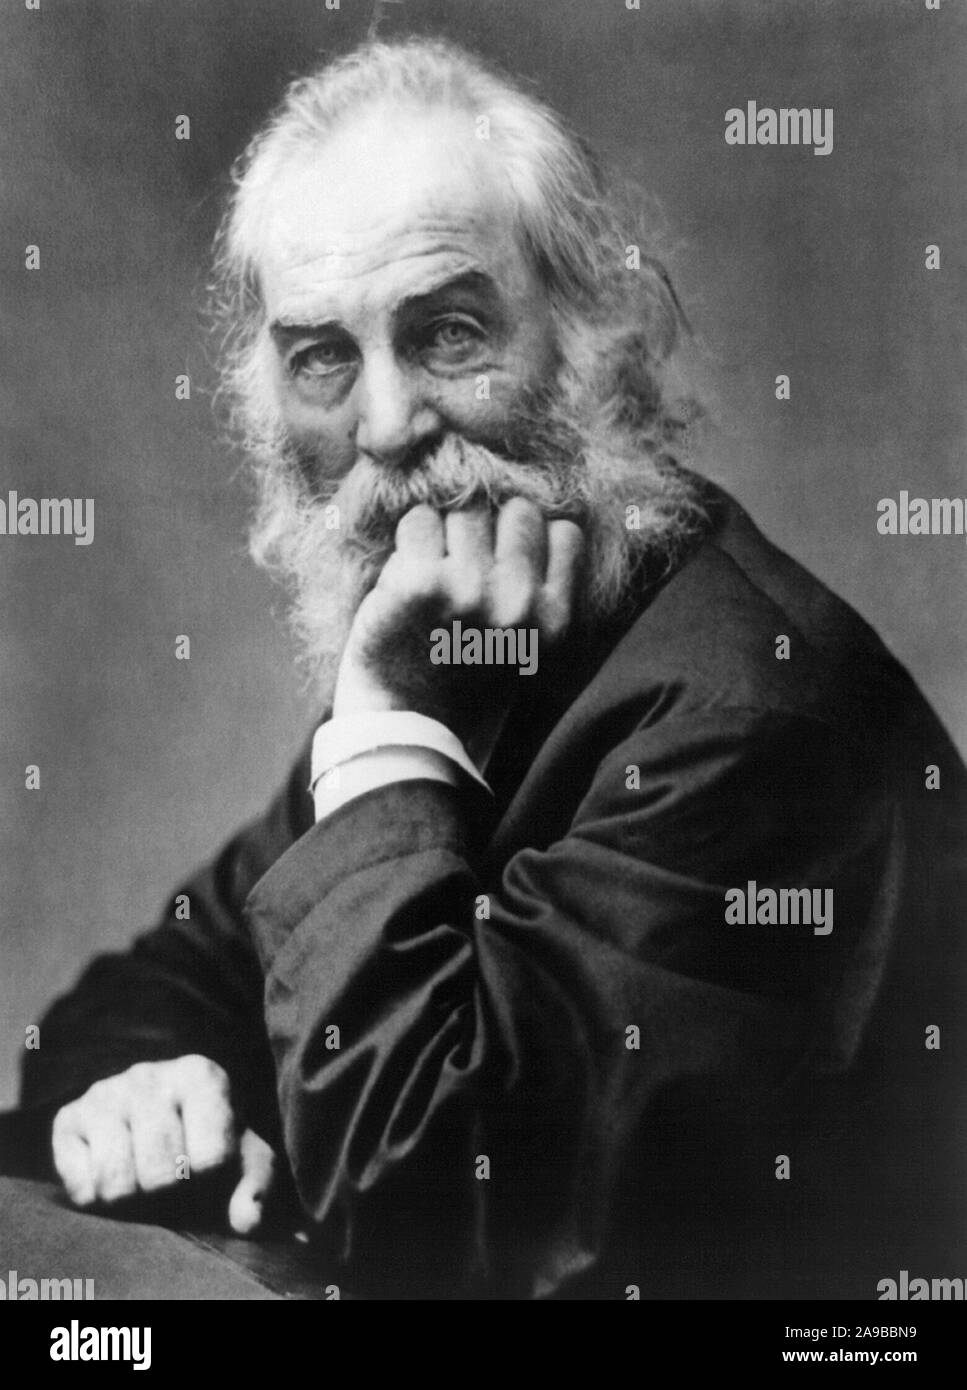 Vintage photo portrait de poète, essayiste et journaliste Walt Whitman (1819 - 1892). Photo vers 1869 par Frank Pearsall. Banque D'Images